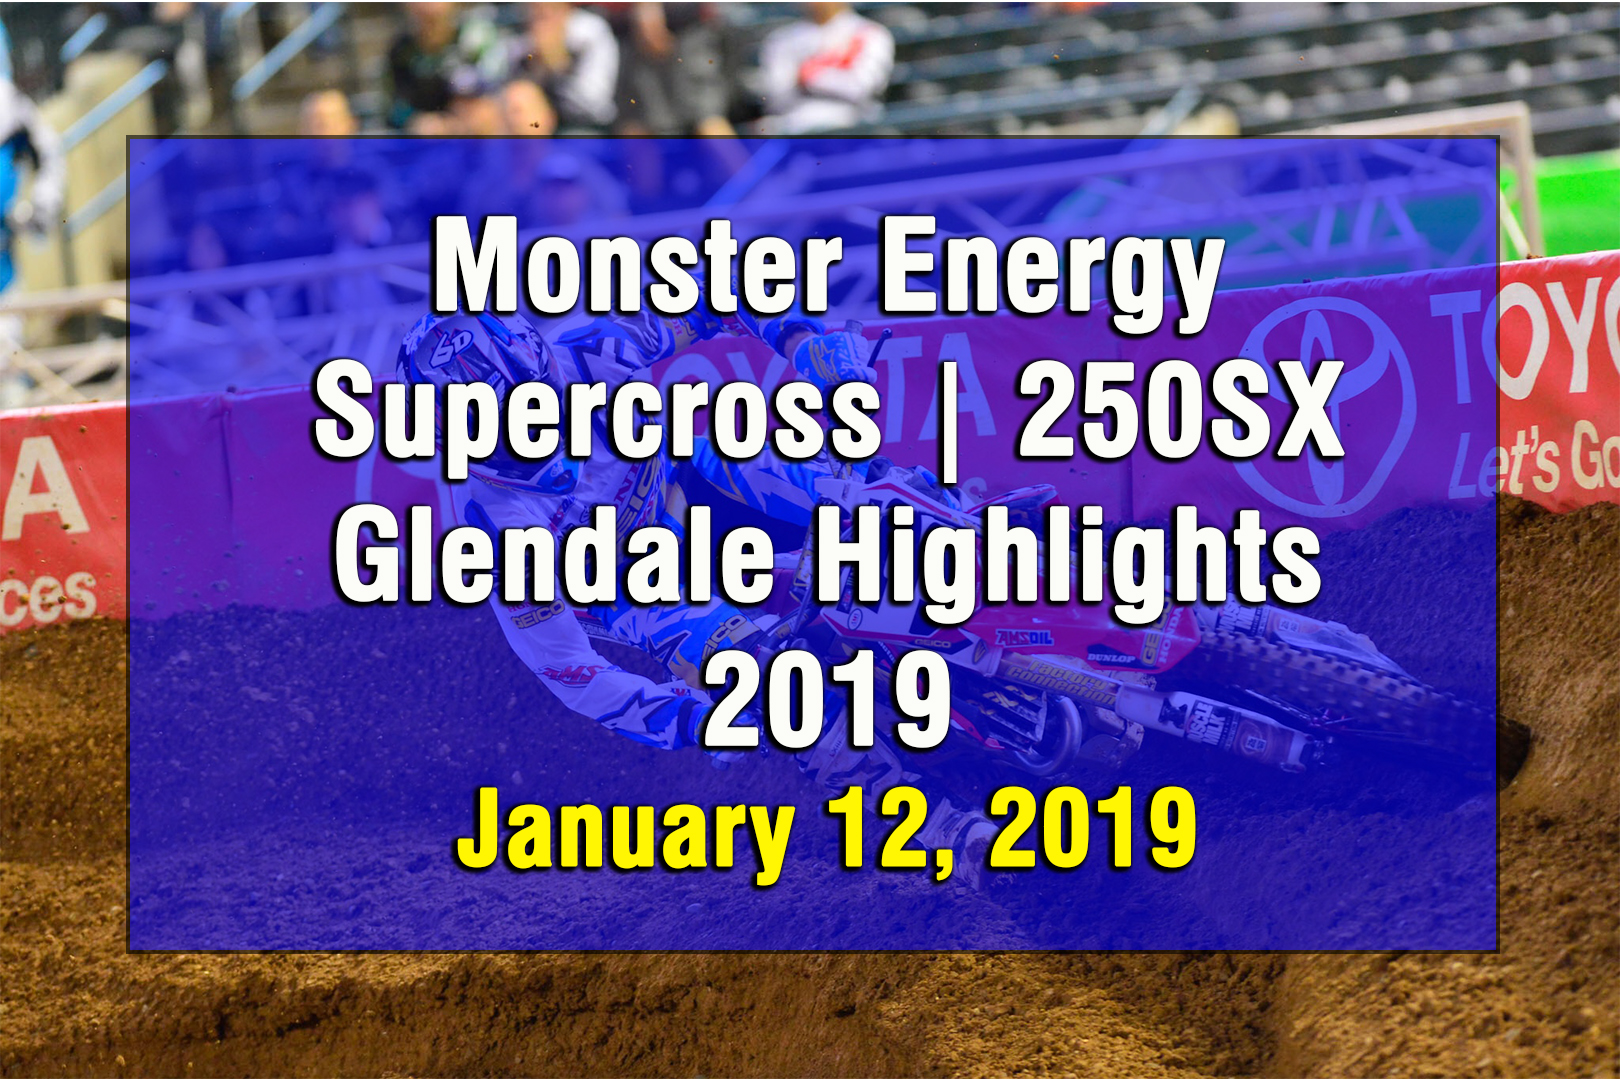 Monster Energy Supercross 250SX Glendale Highlights 2019